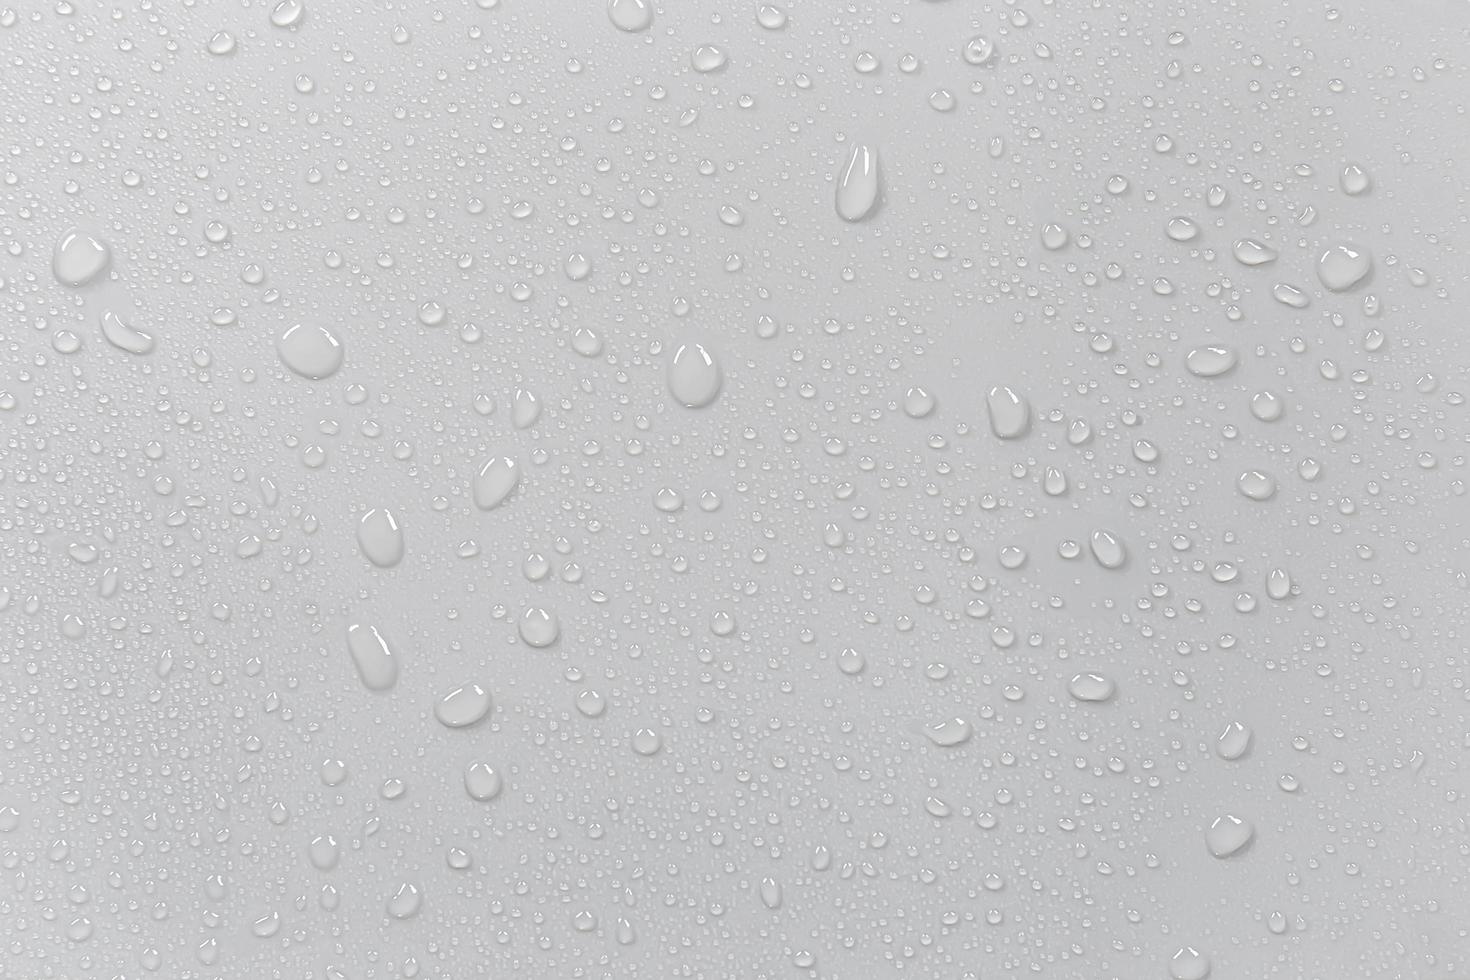 o conceito de gotas de chuva caindo em uma superfície branca molhada abstrata de fundo cinza com bolhas na superfície gotas de água realistas de gotas de água pura para design de banner criativo foto